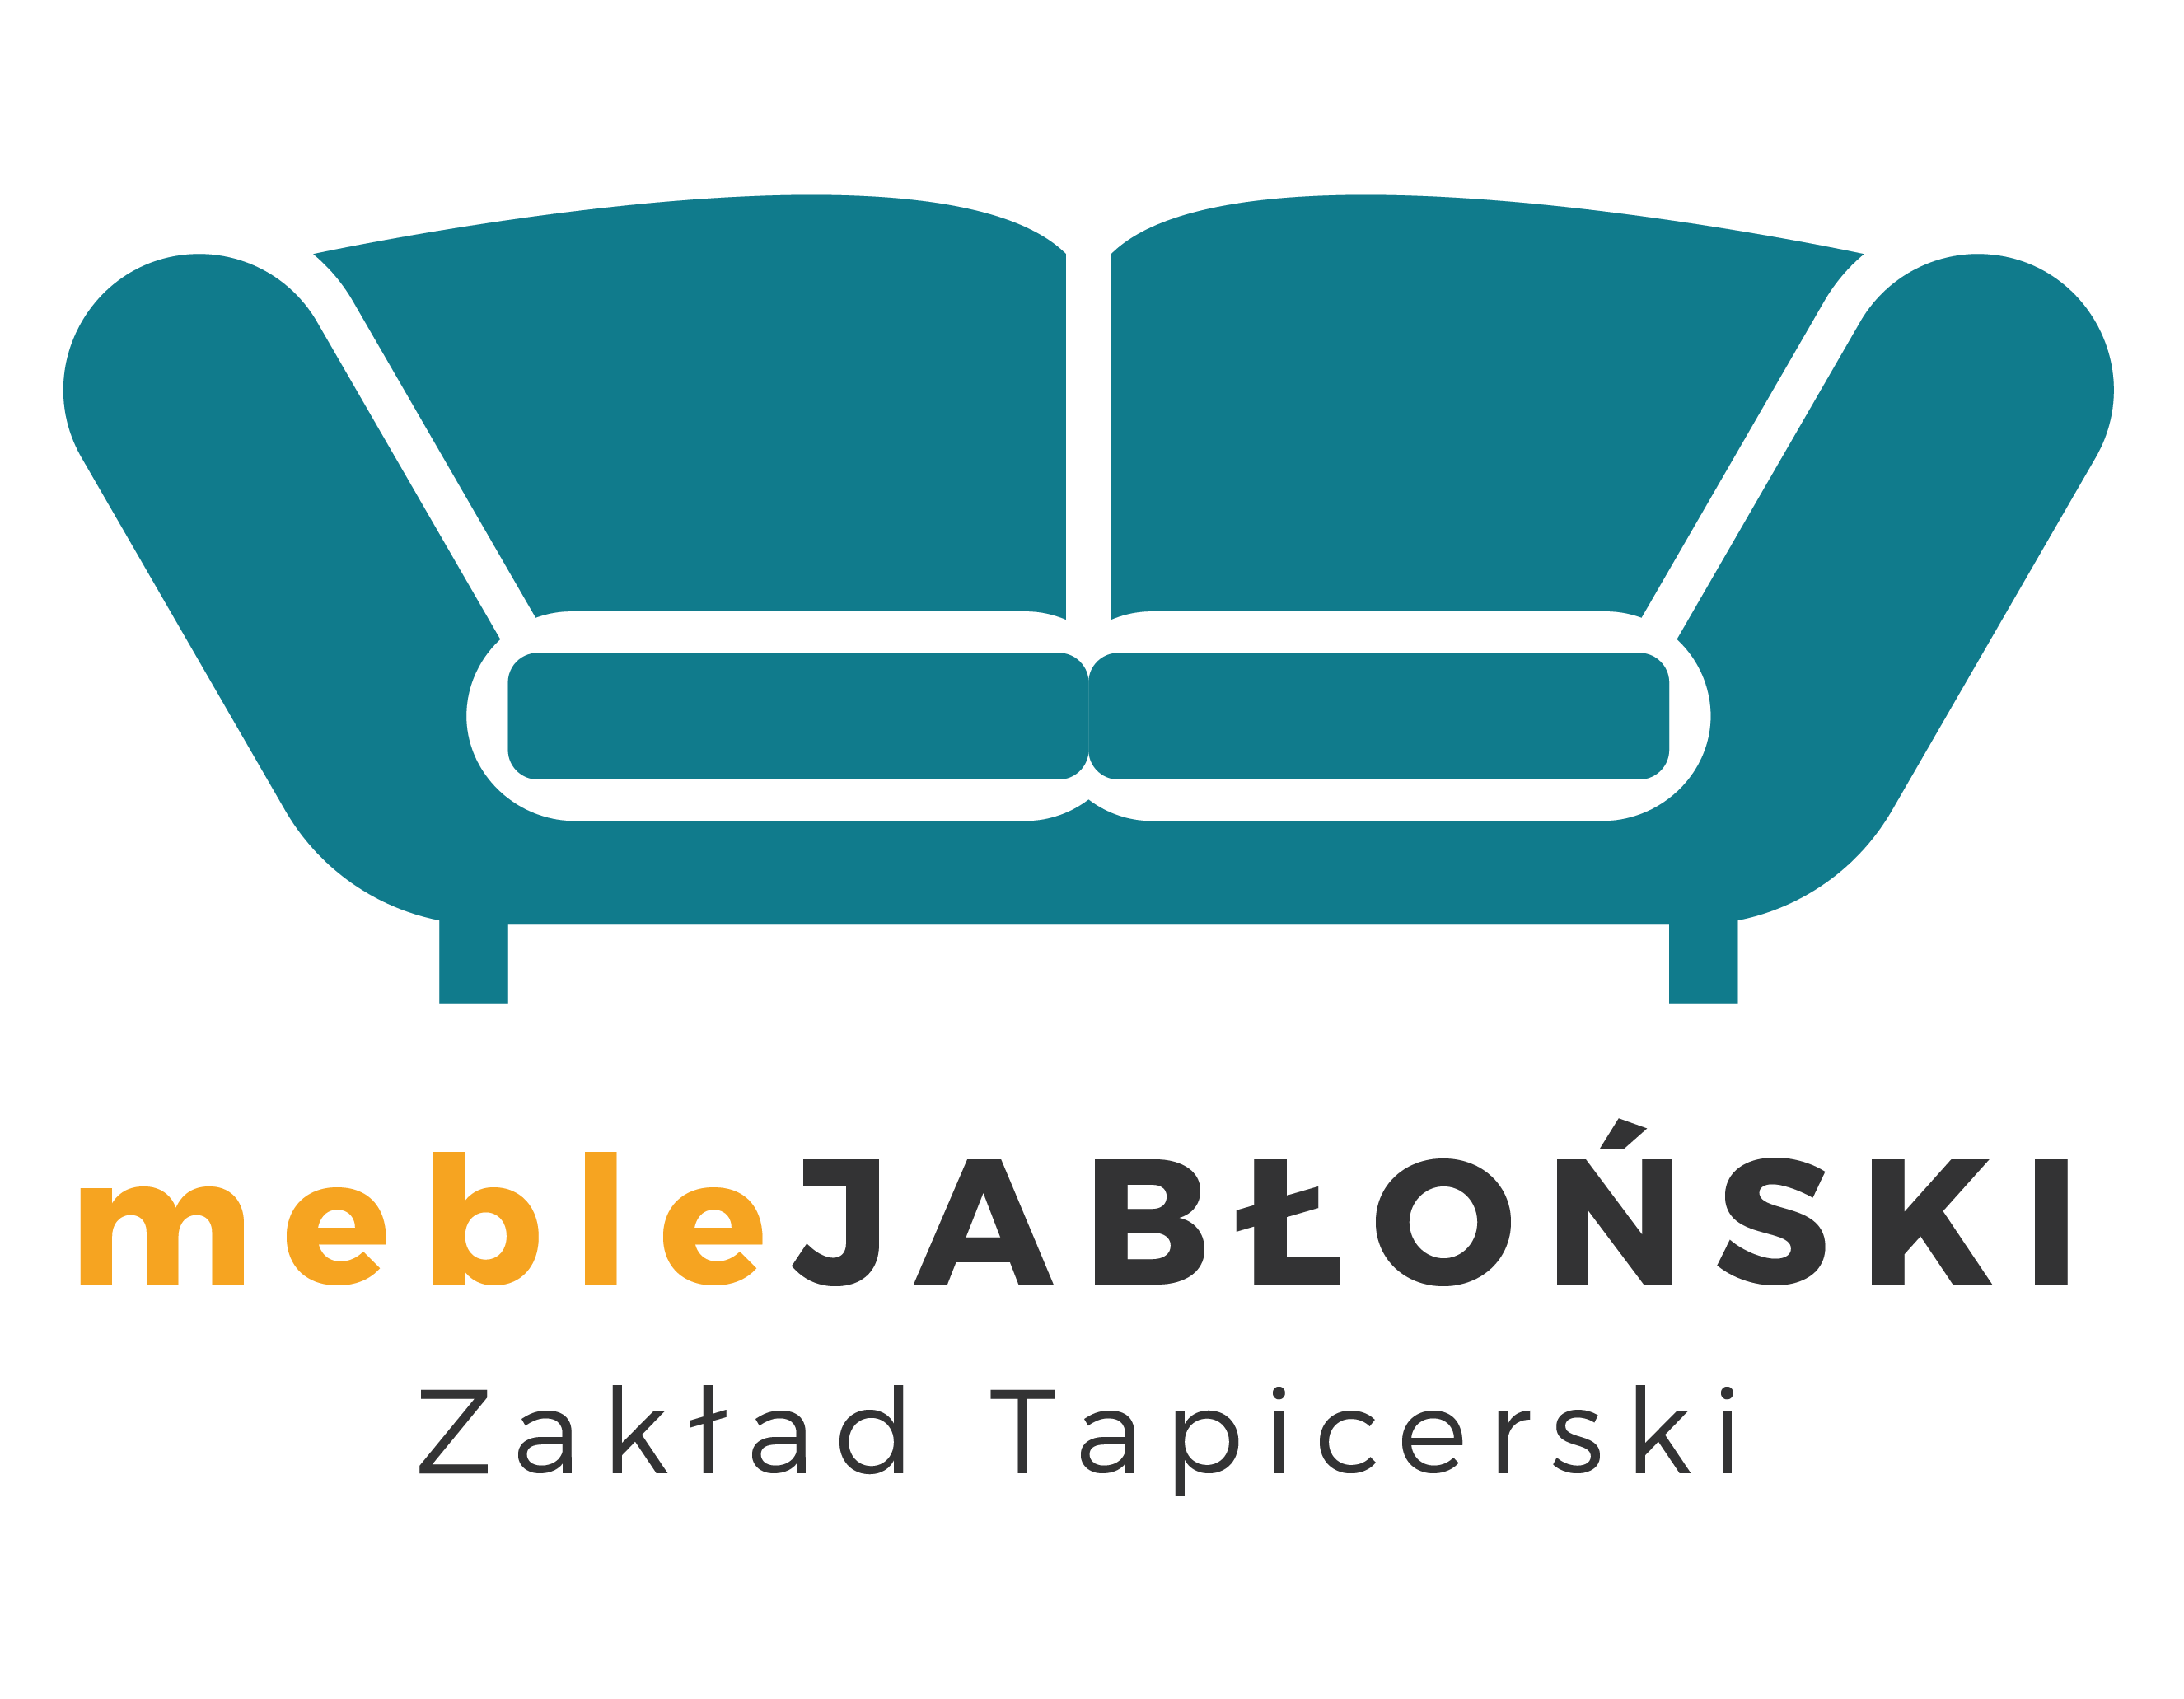 Meble Kurzętnik Zakład Tapicerski Jabłoński